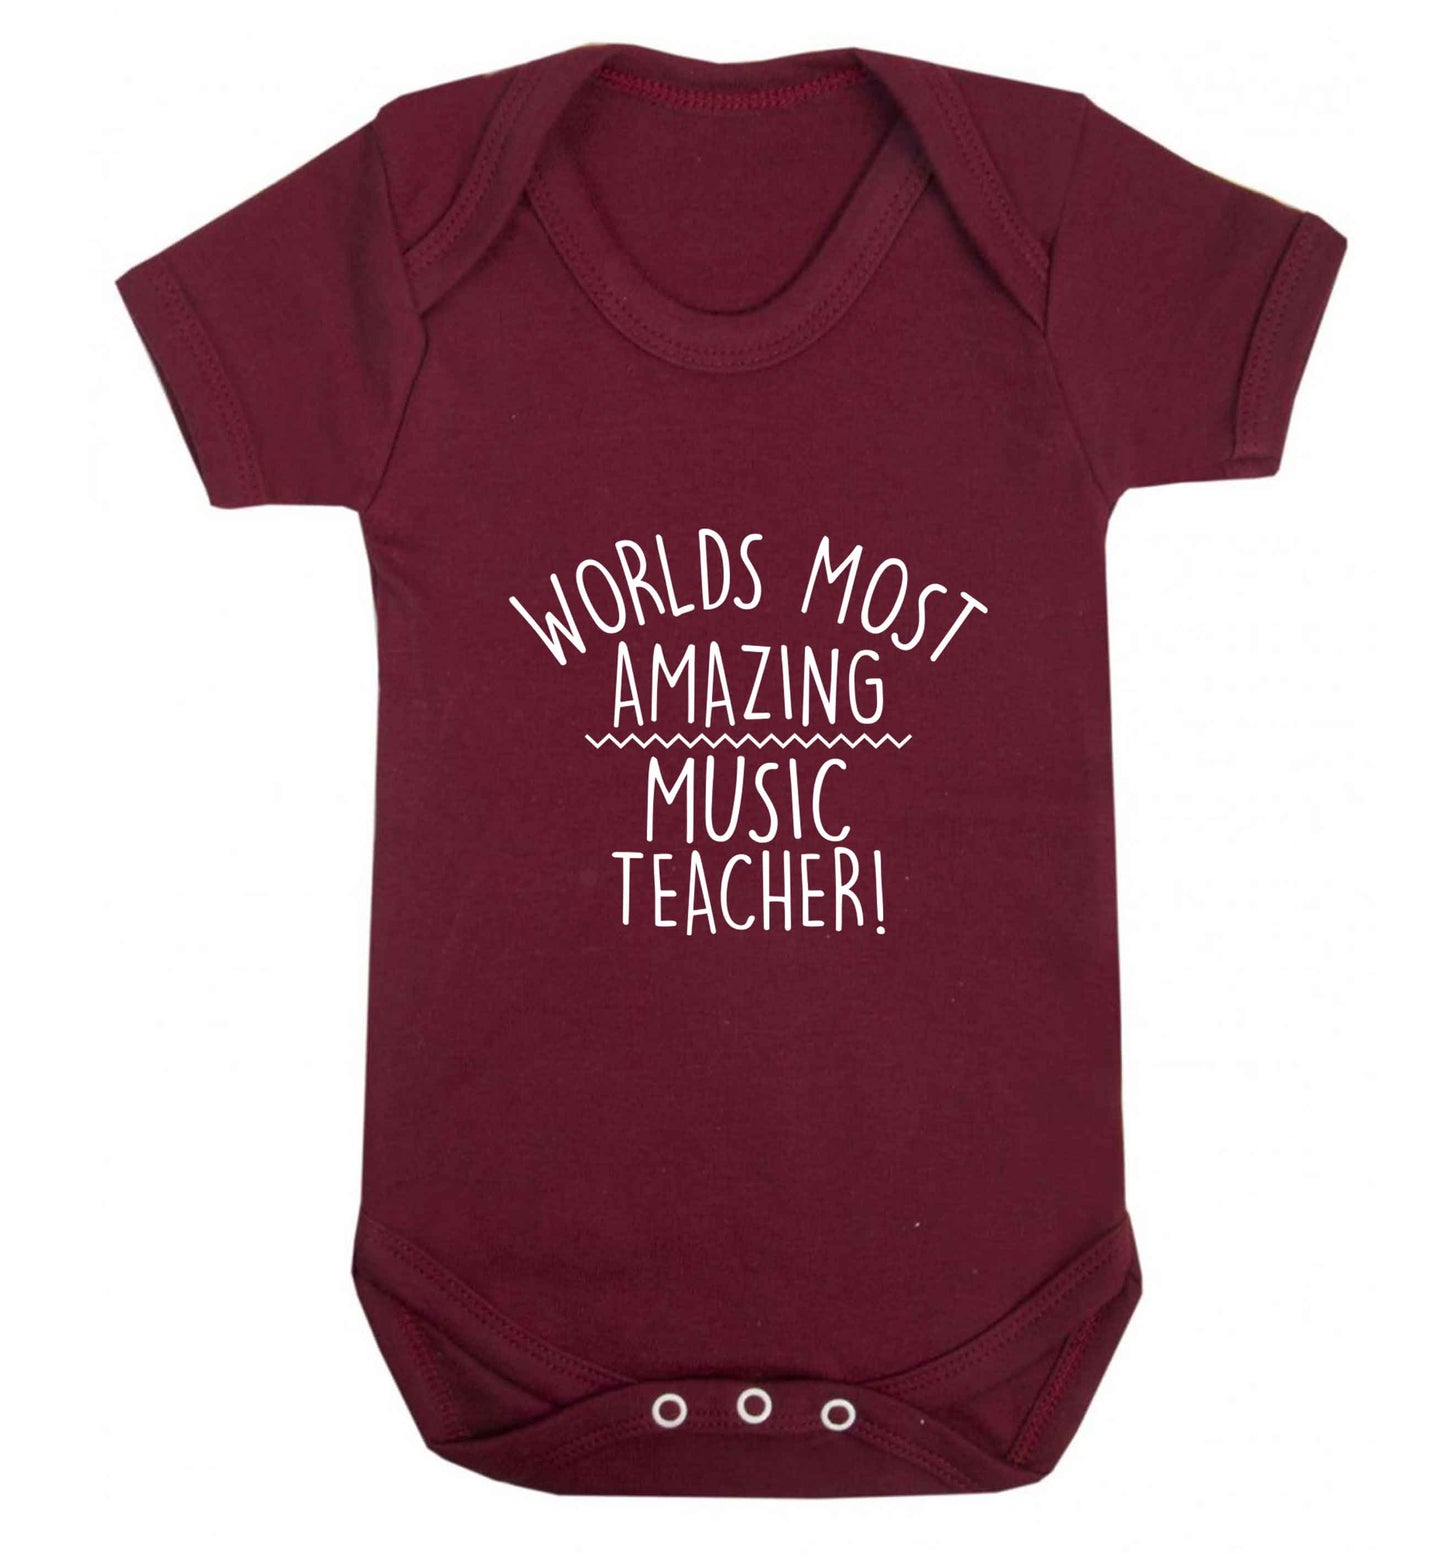 Worlds most amazing music teacher baby vest maroon 18-24 months